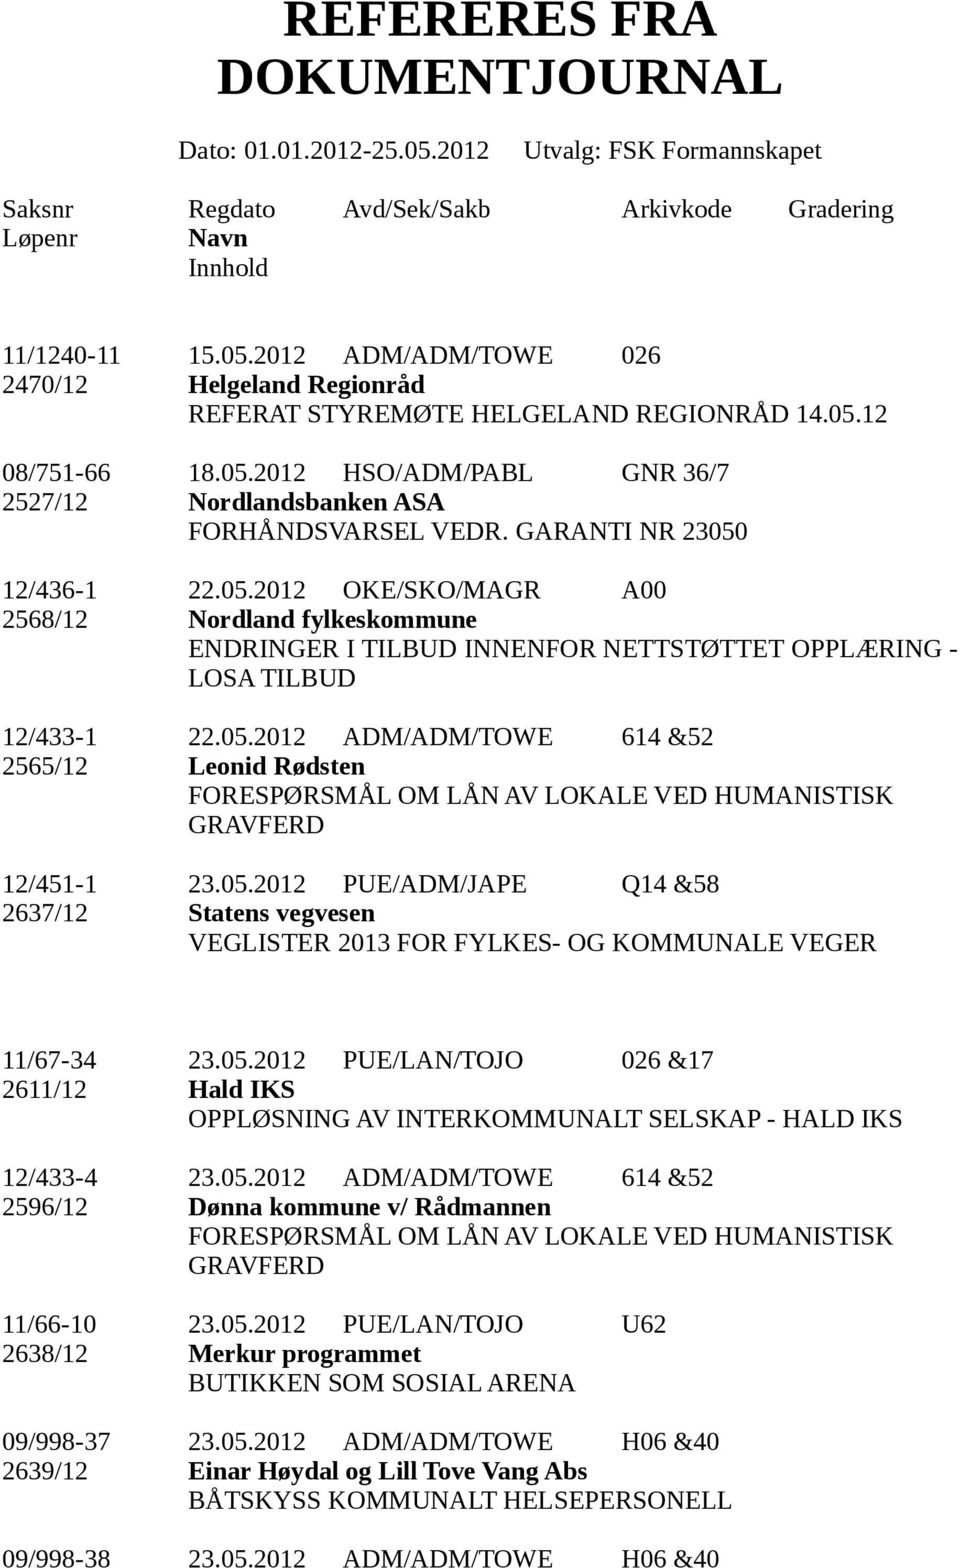 05.2012 PUE/ADM/JAPE Q14 &58 2637/12 Statens vegvesen VEGLISTER 2013 FOR FYLKES- OG KOMMUNALE VEGER 11/67-34 23.05.2012 PUE/LAN/TOJO 026 &17 2611/12 Hald IKS OPPLØSNING AV INTERKOMMUNALT SELSKAP - HALD IKS 12/433-4 23.